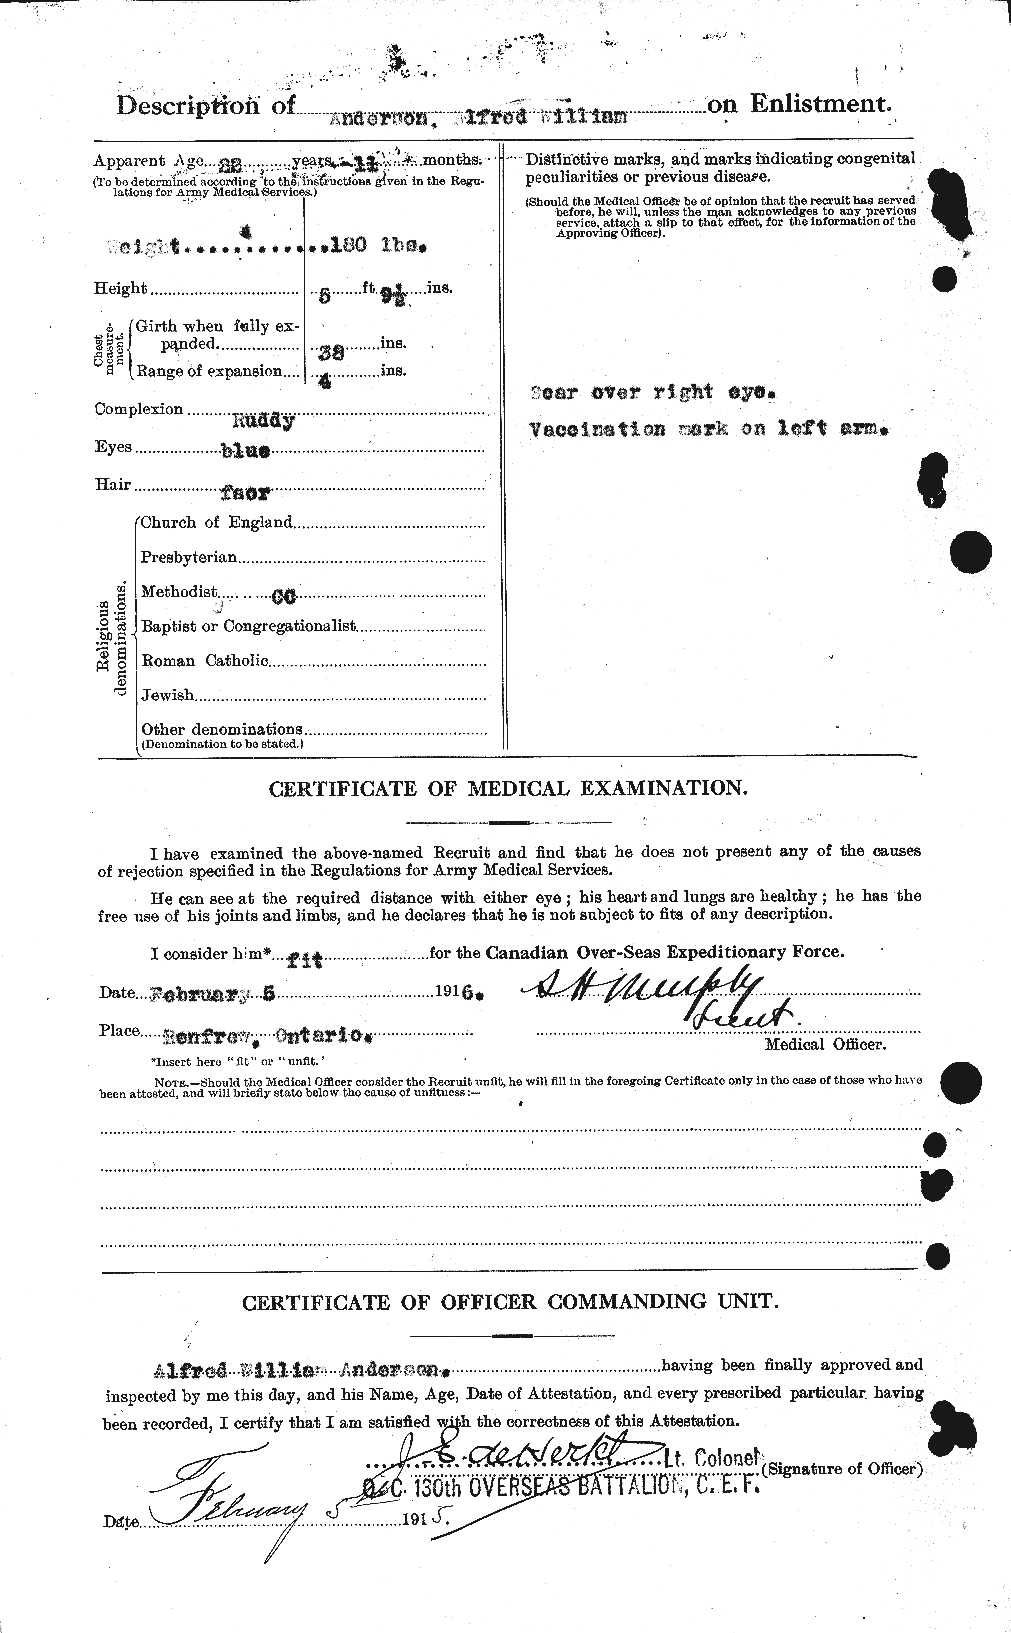 Dossiers du Personnel de la Première Guerre mondiale - CEC 209450b